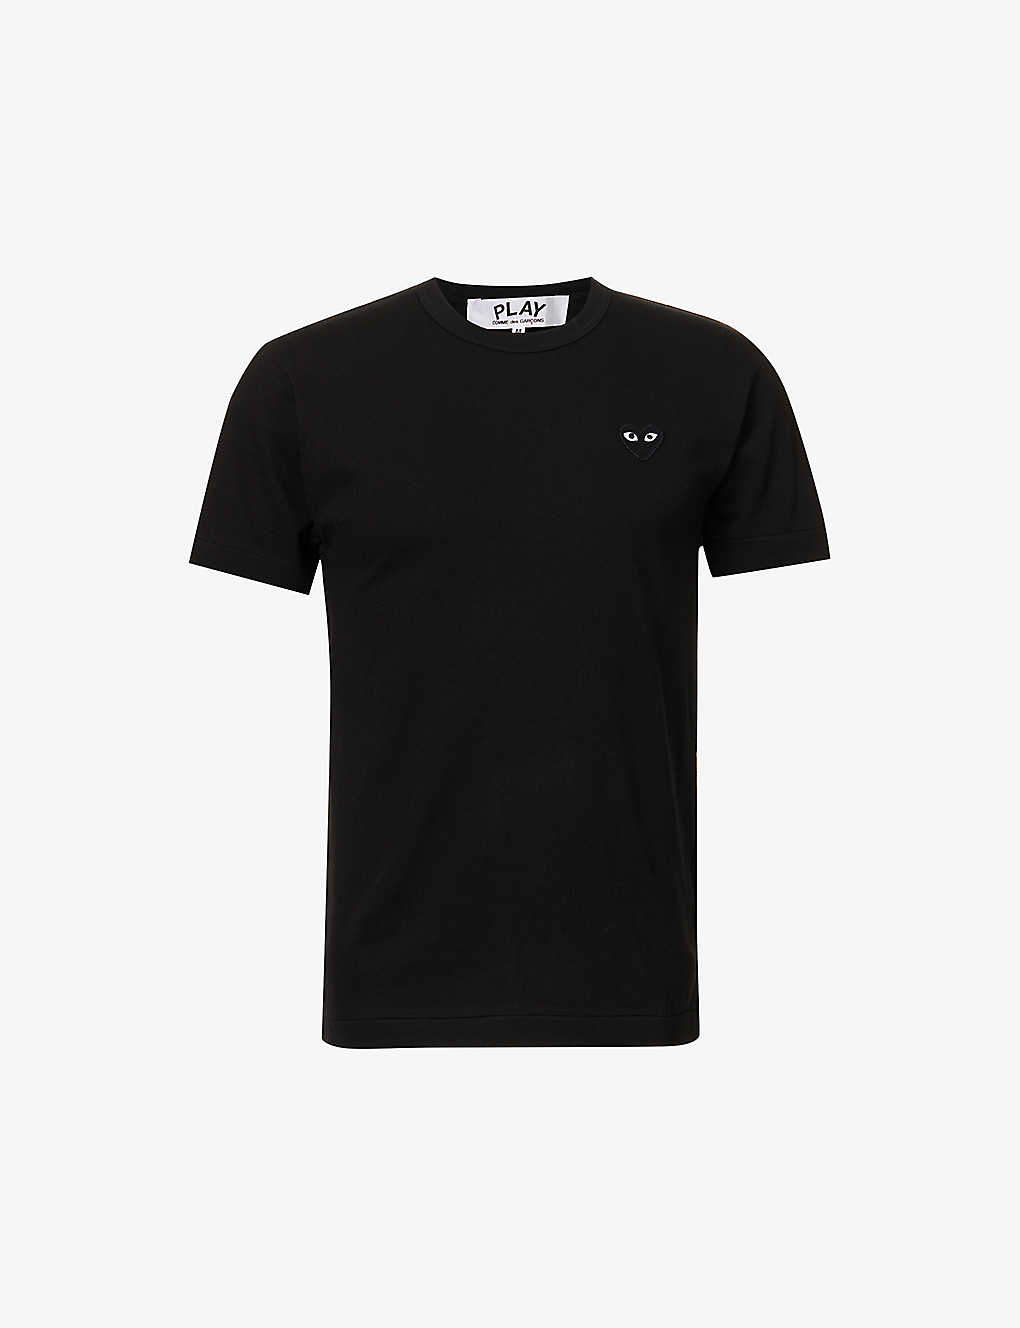 Shop Comme Des Garçons Play Comme Des Garcons Play Men's Black Heart-appliqué Cotton-jersey T-shirt